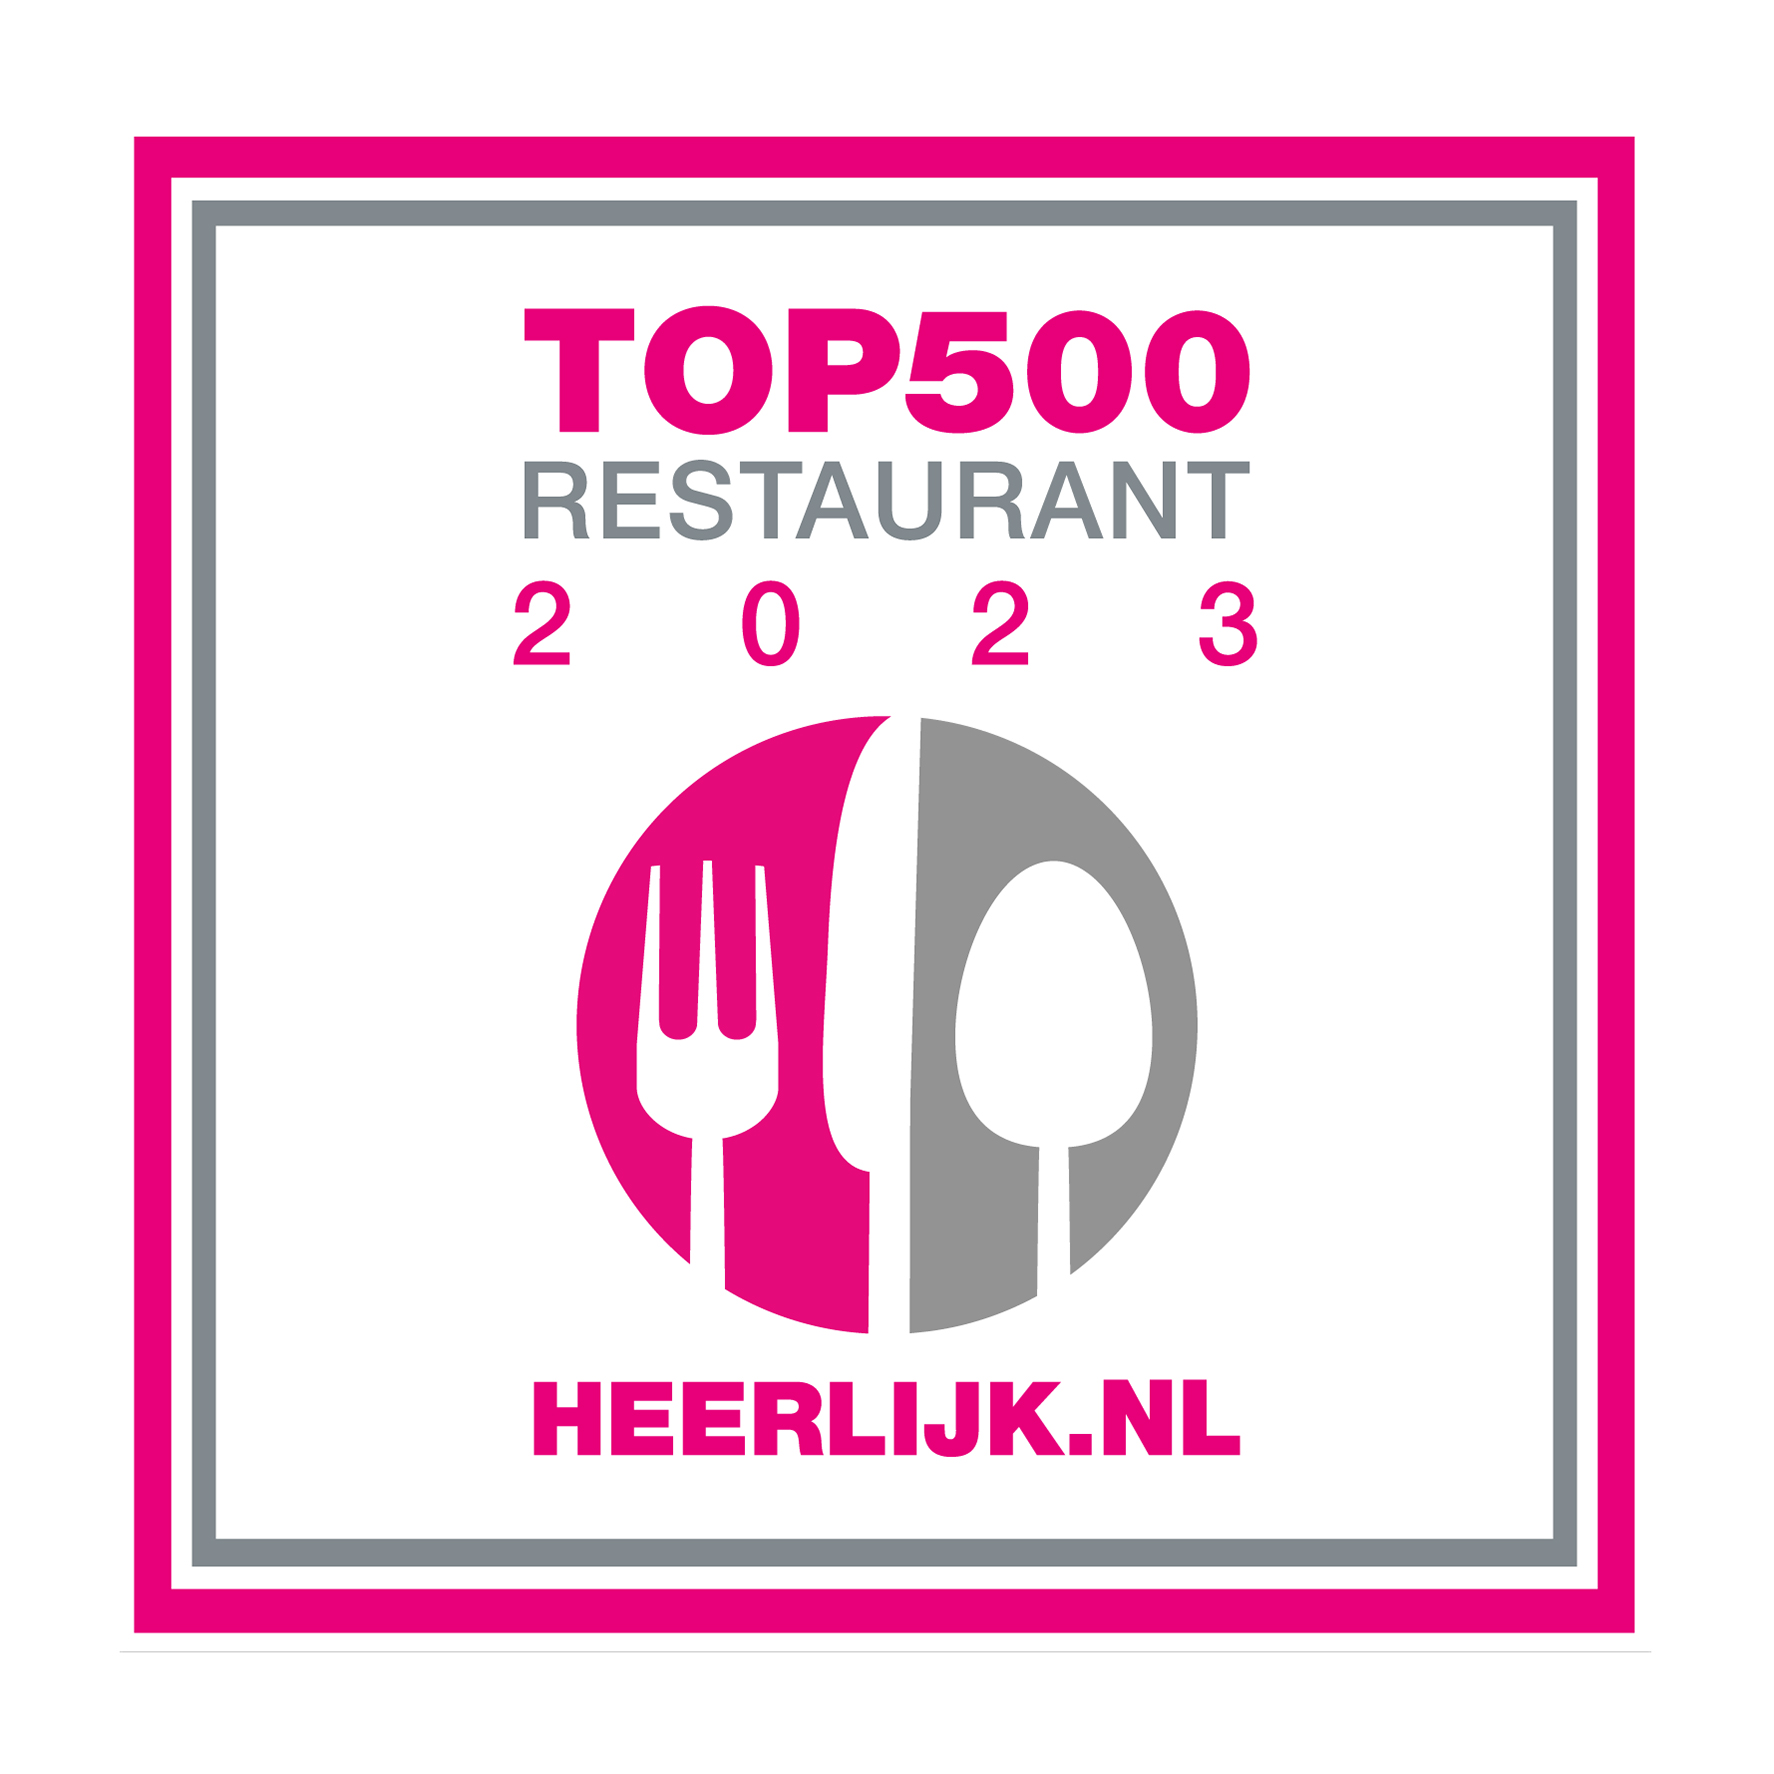 HEERLIJK Top 500